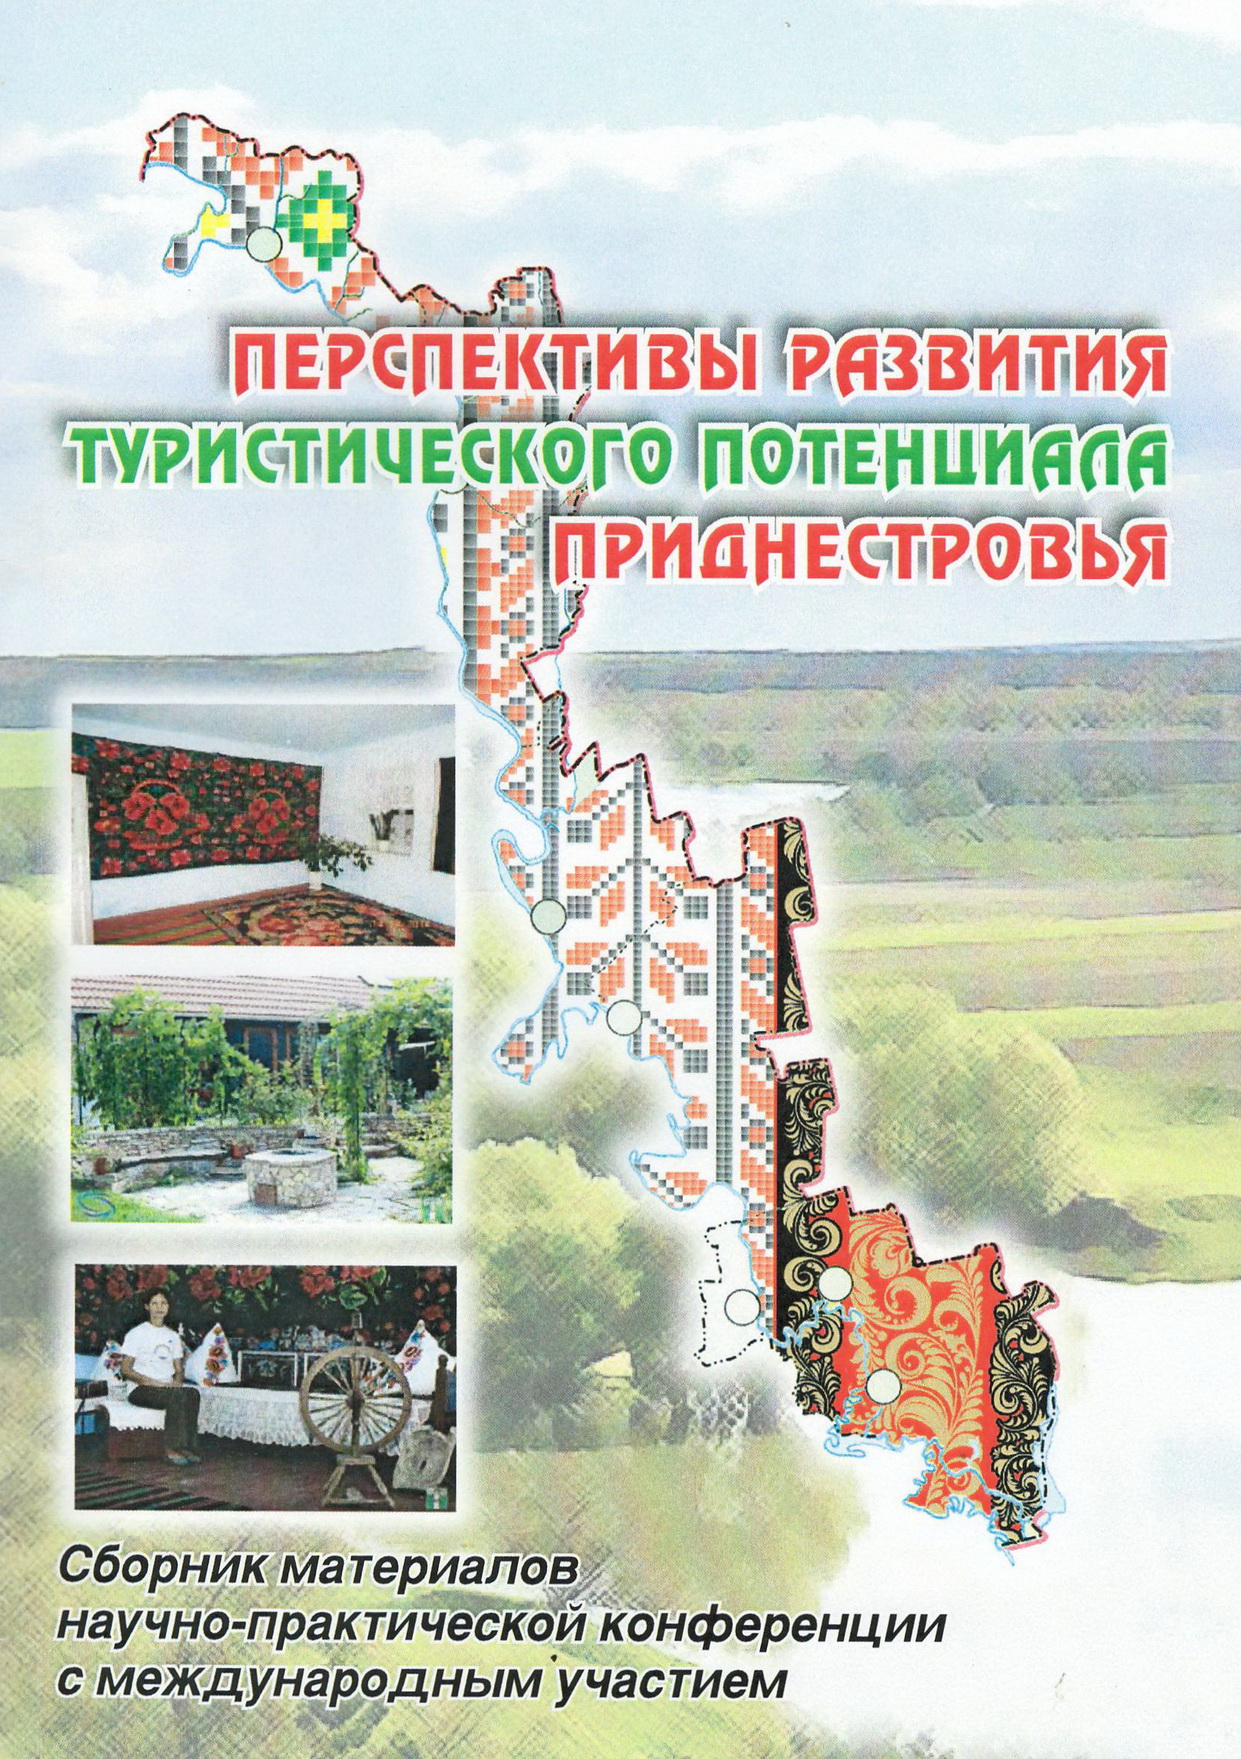 Перспективы развития туристического потенциала Приднестровья 2017